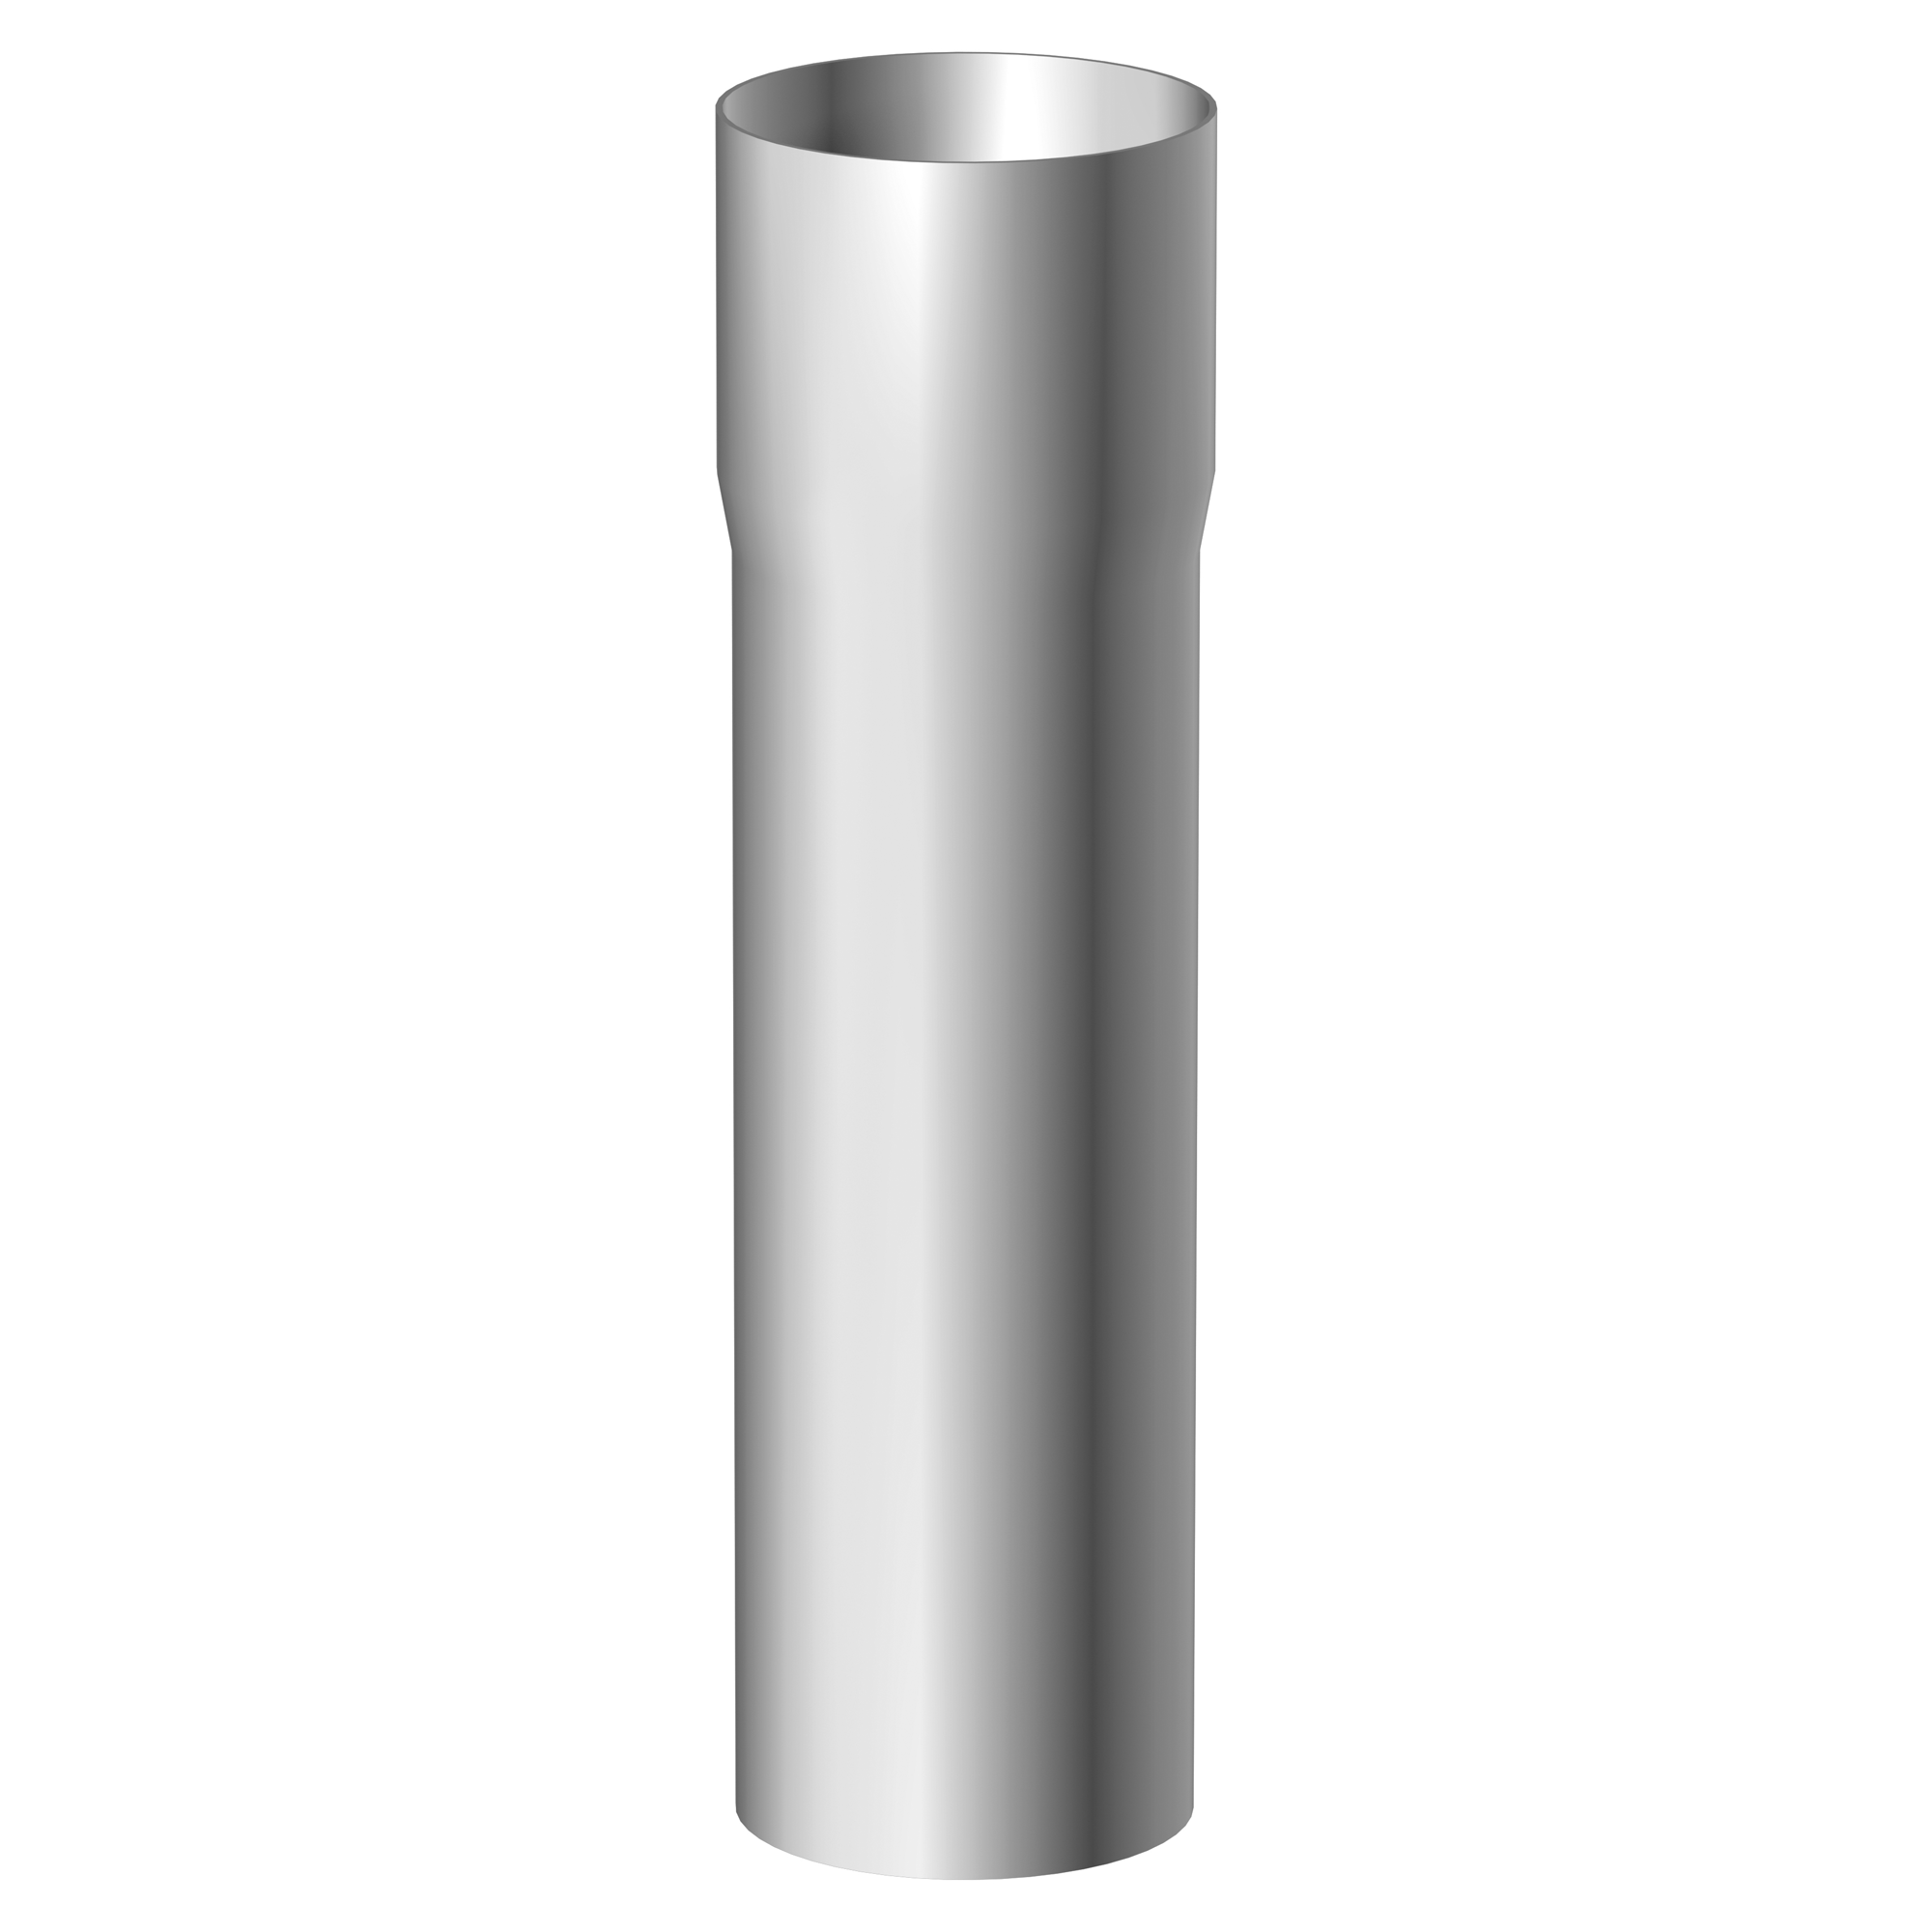 Aluminium-Fallrohr 80 mm + product picture